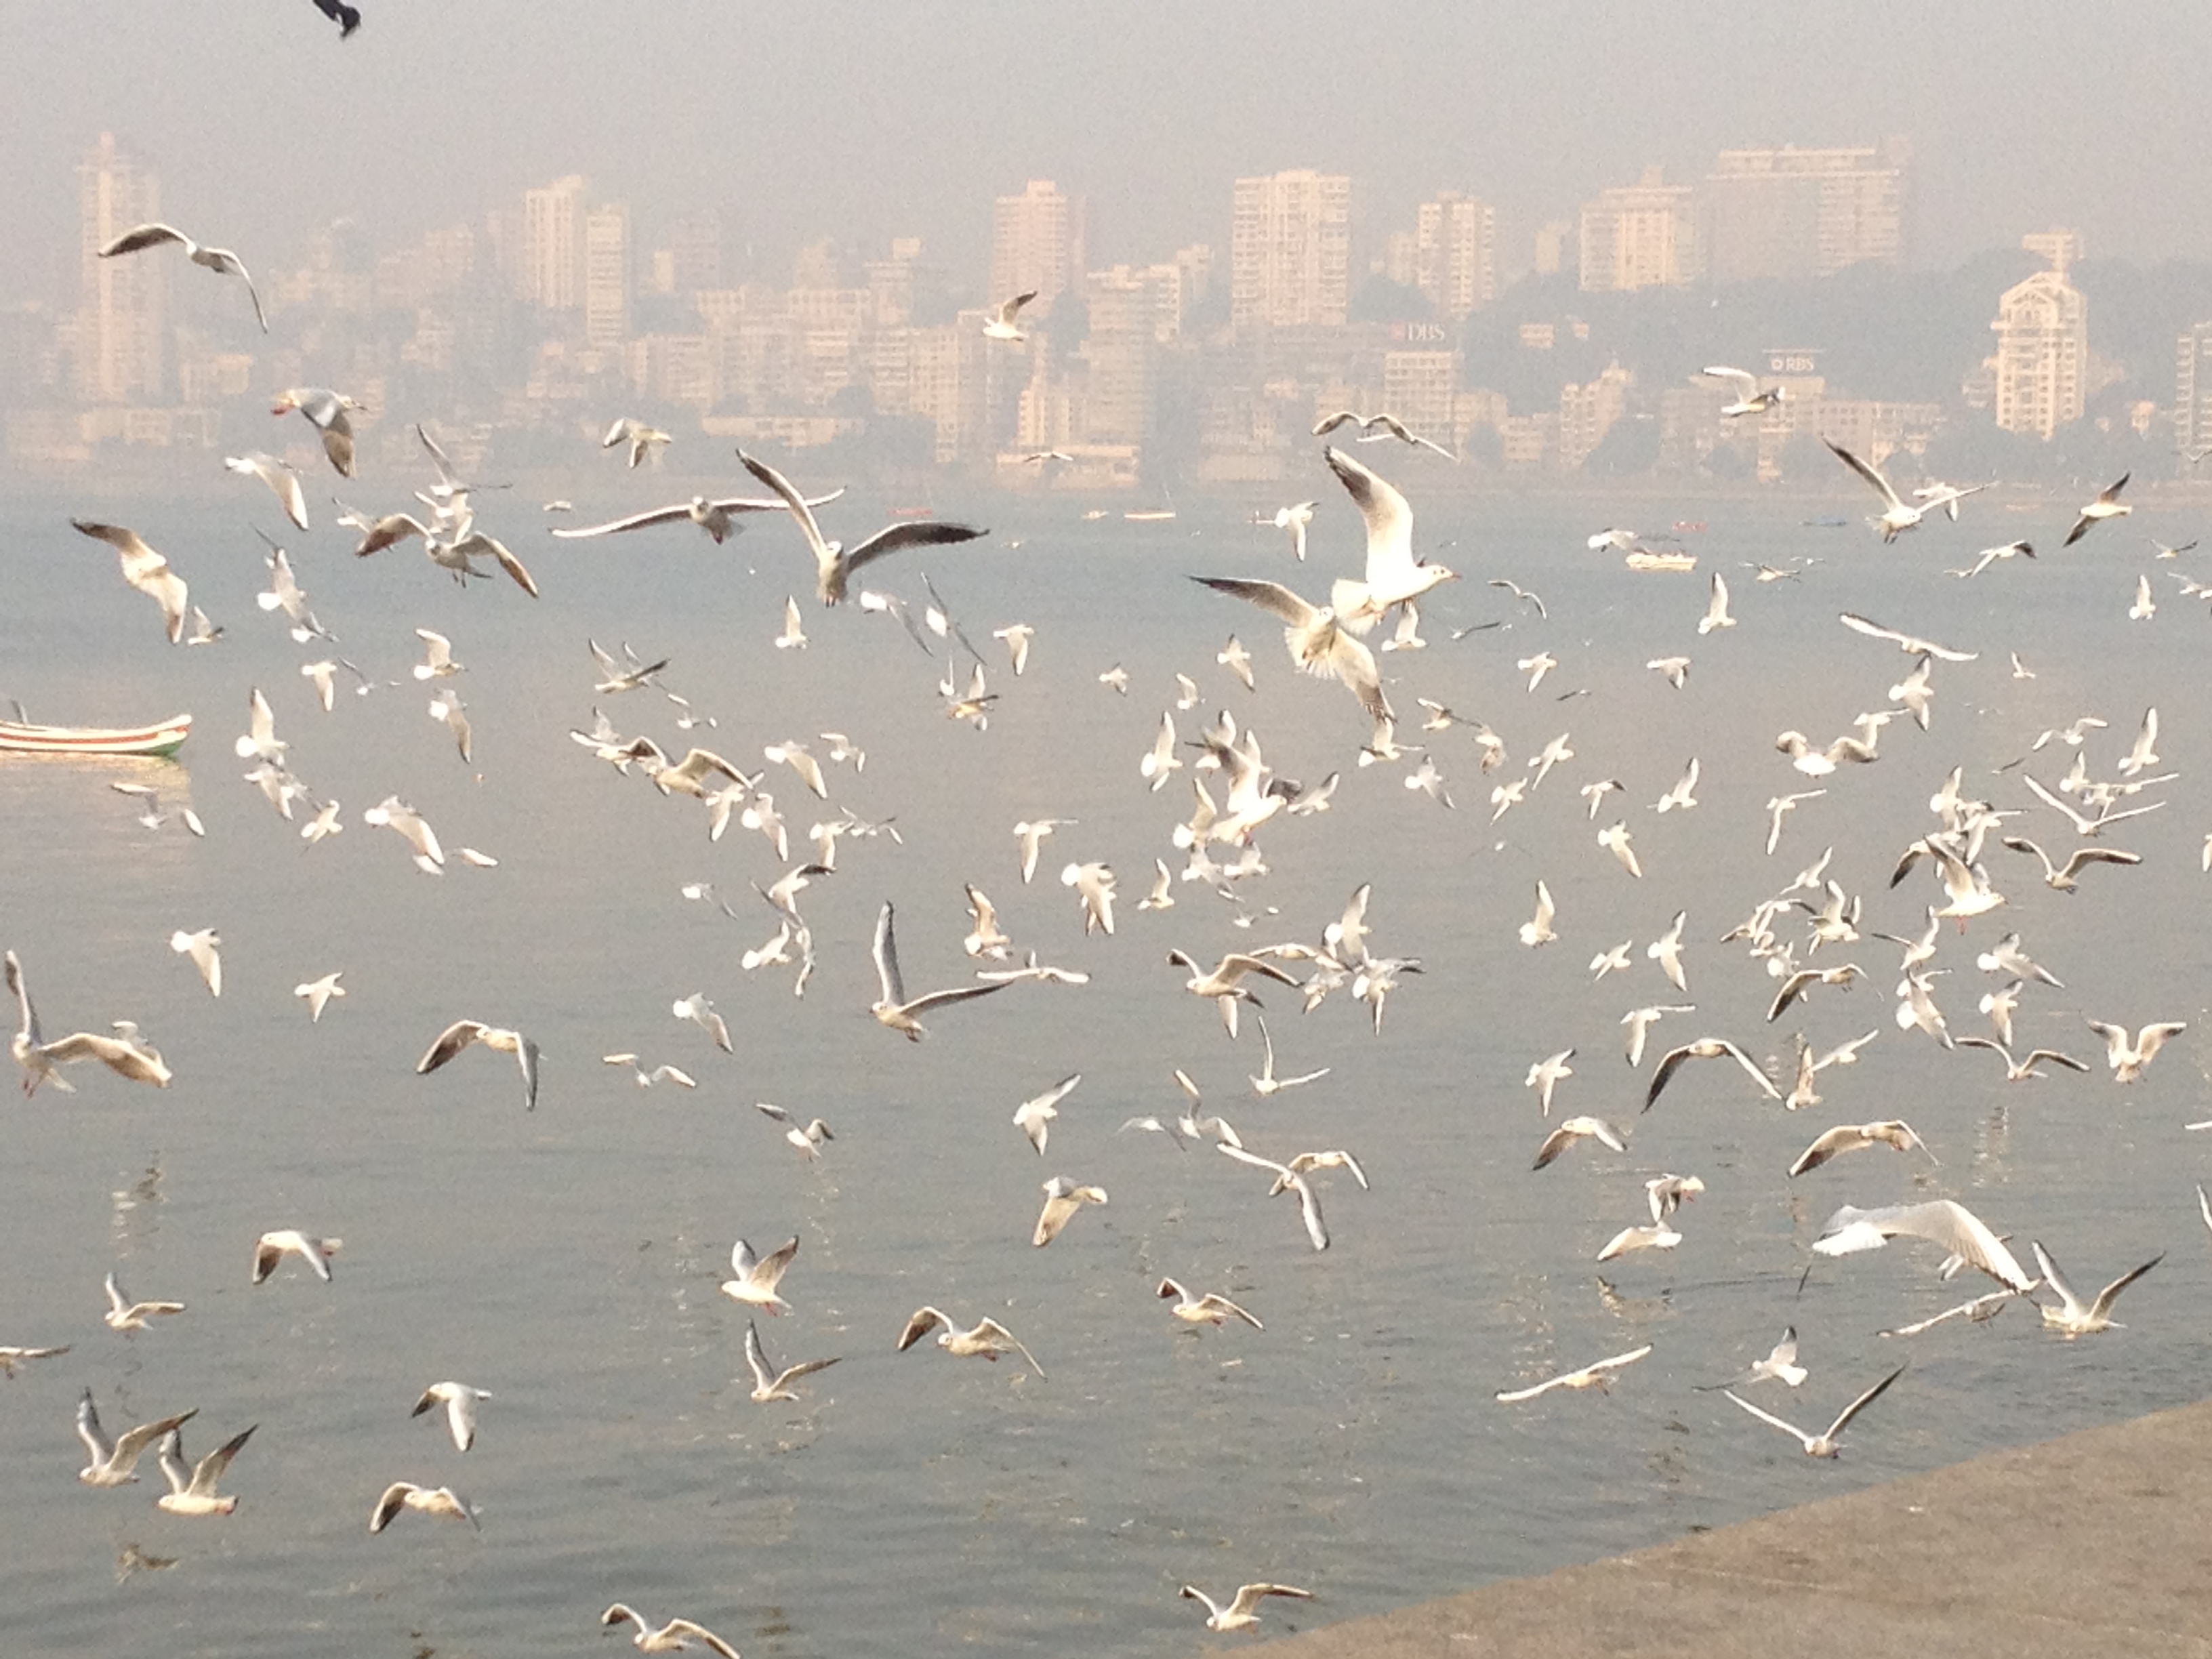 Good morning, Mumbai!